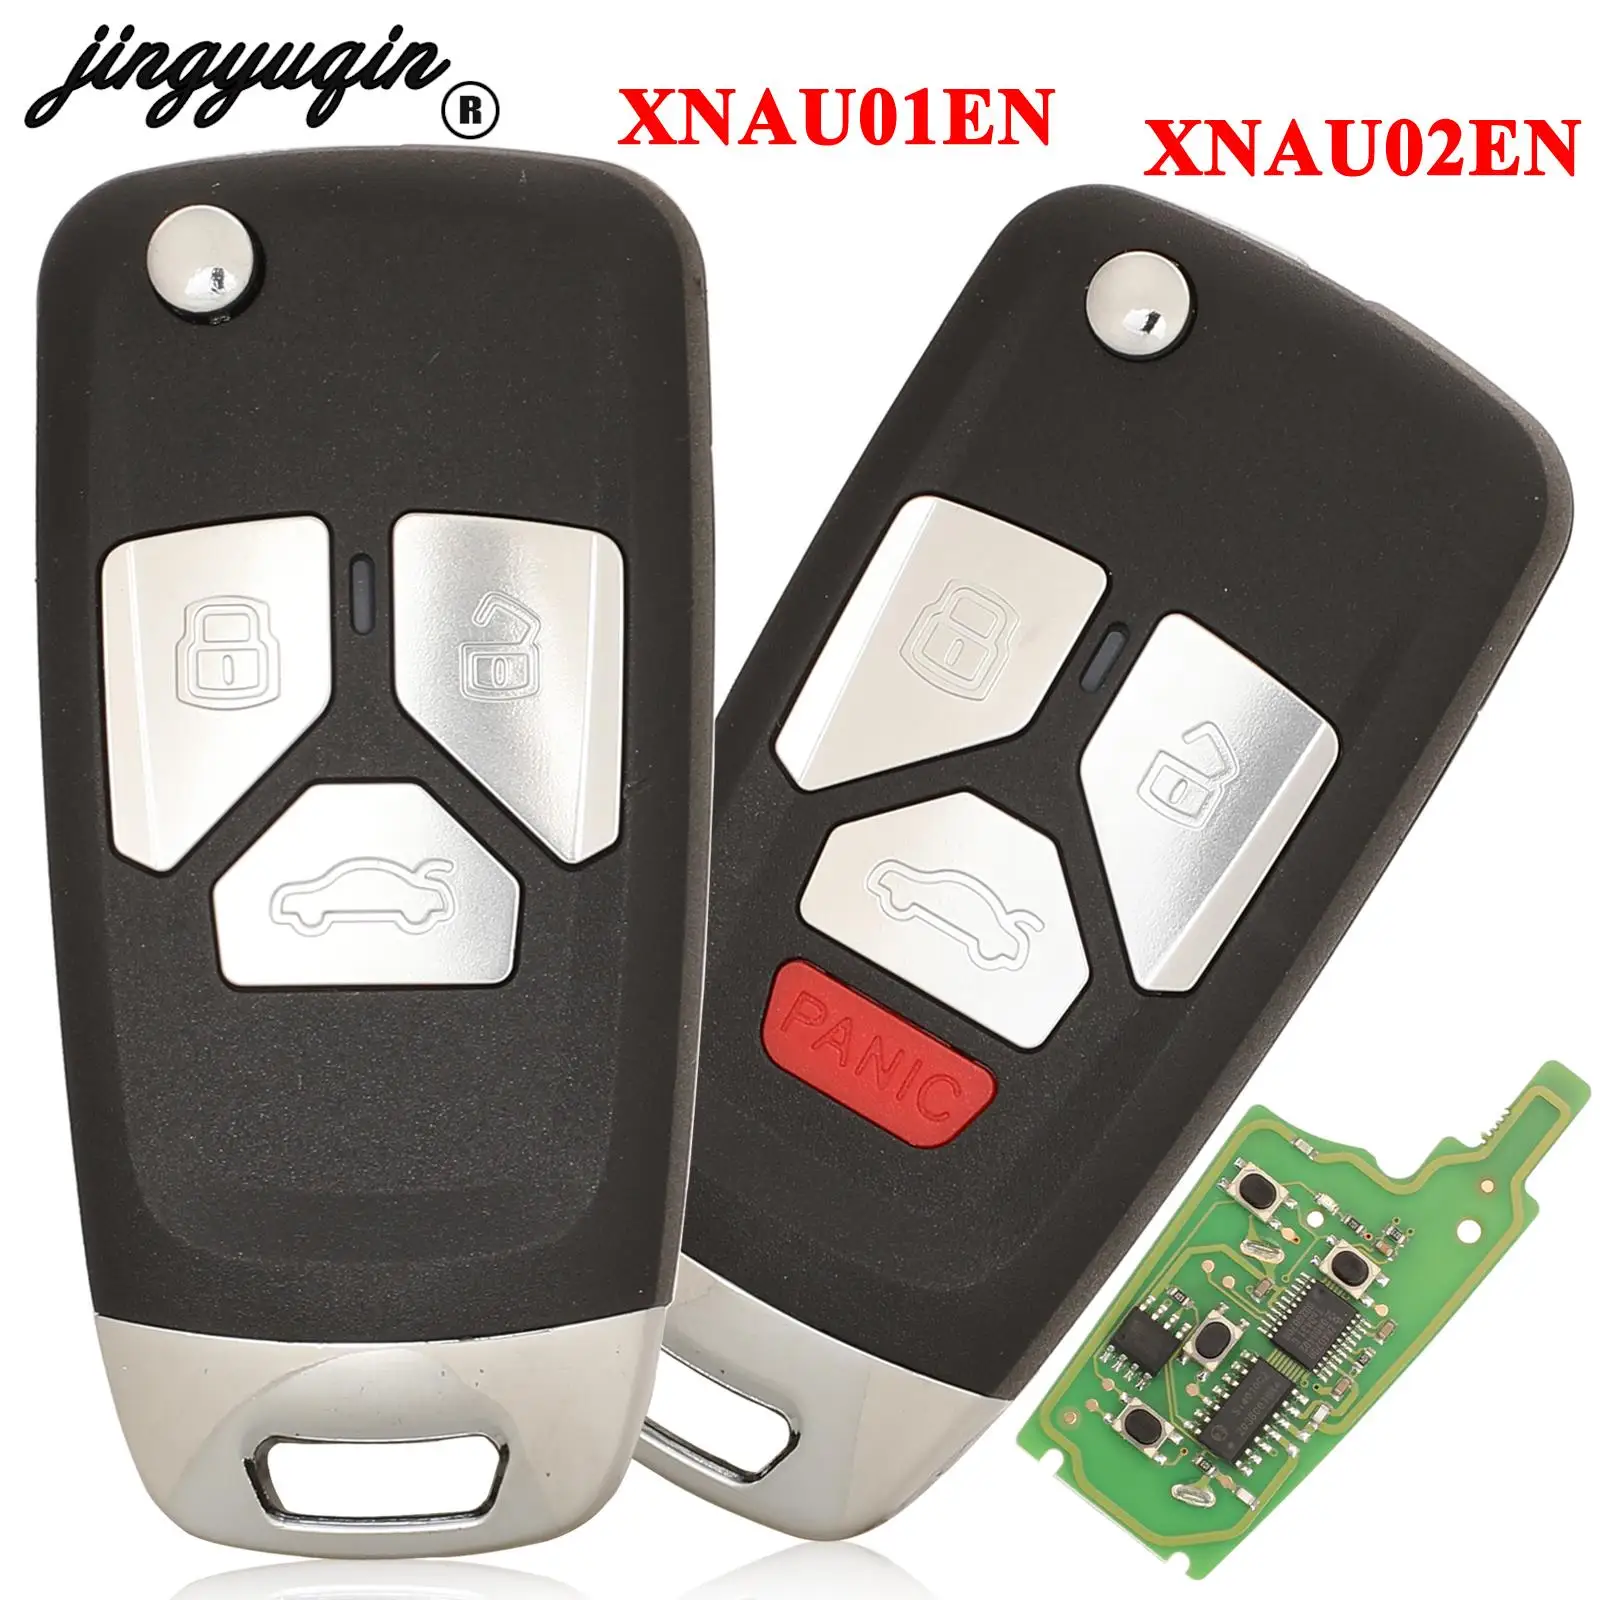 

jingyuqin 3/4 Buttons XNAU02EN /XNAU01EN Universal VVDI2 Mini Remote Control Key Tool For Audi Type VVDI Xhorse Wireless Car Key